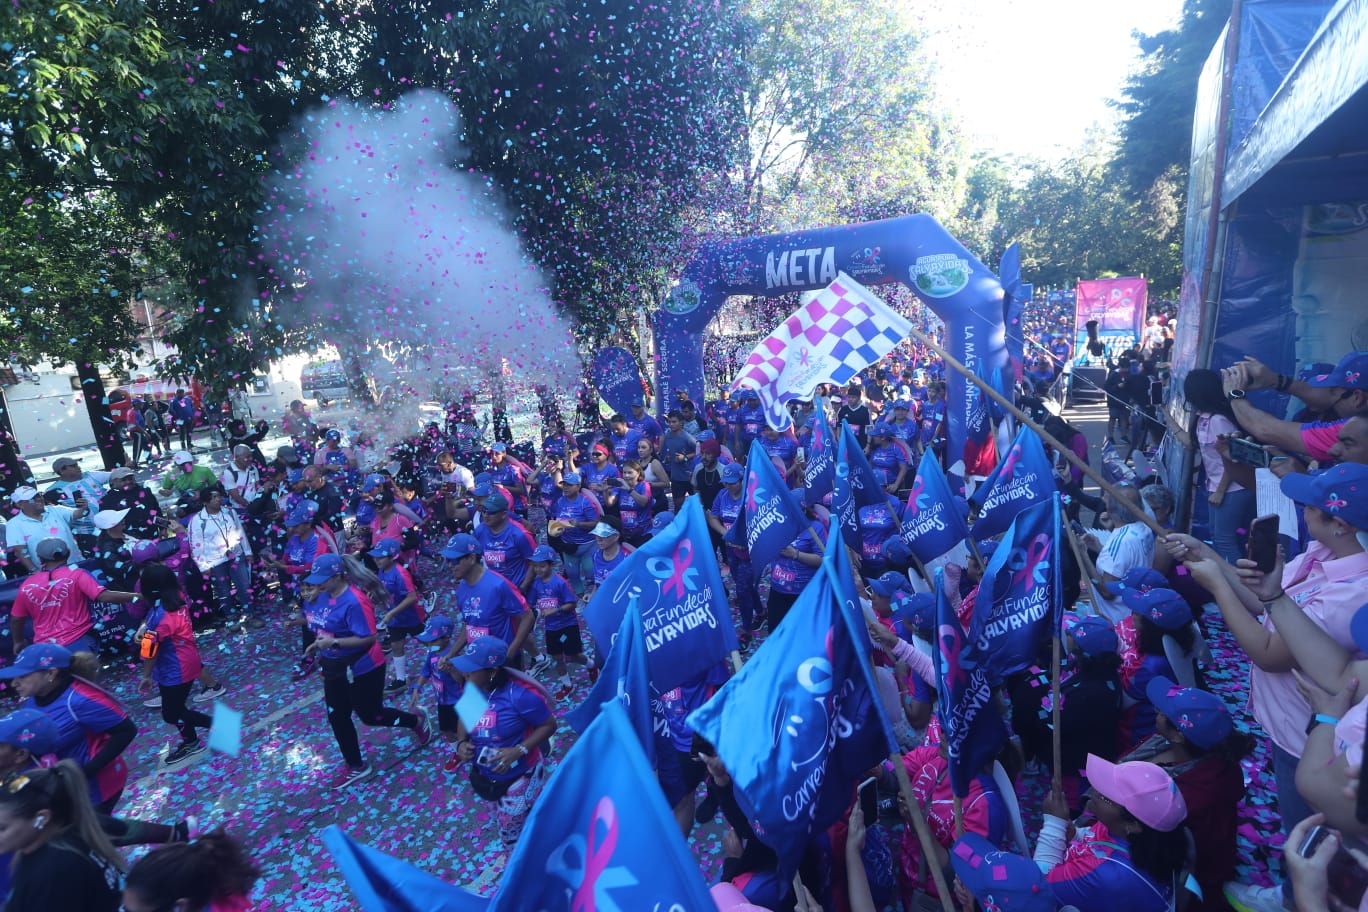 Corredores llenan de color La Reforma en la carrera anual de Fundecán y Agua Pura Salvavidas por la lucha contra el cáncer de mama